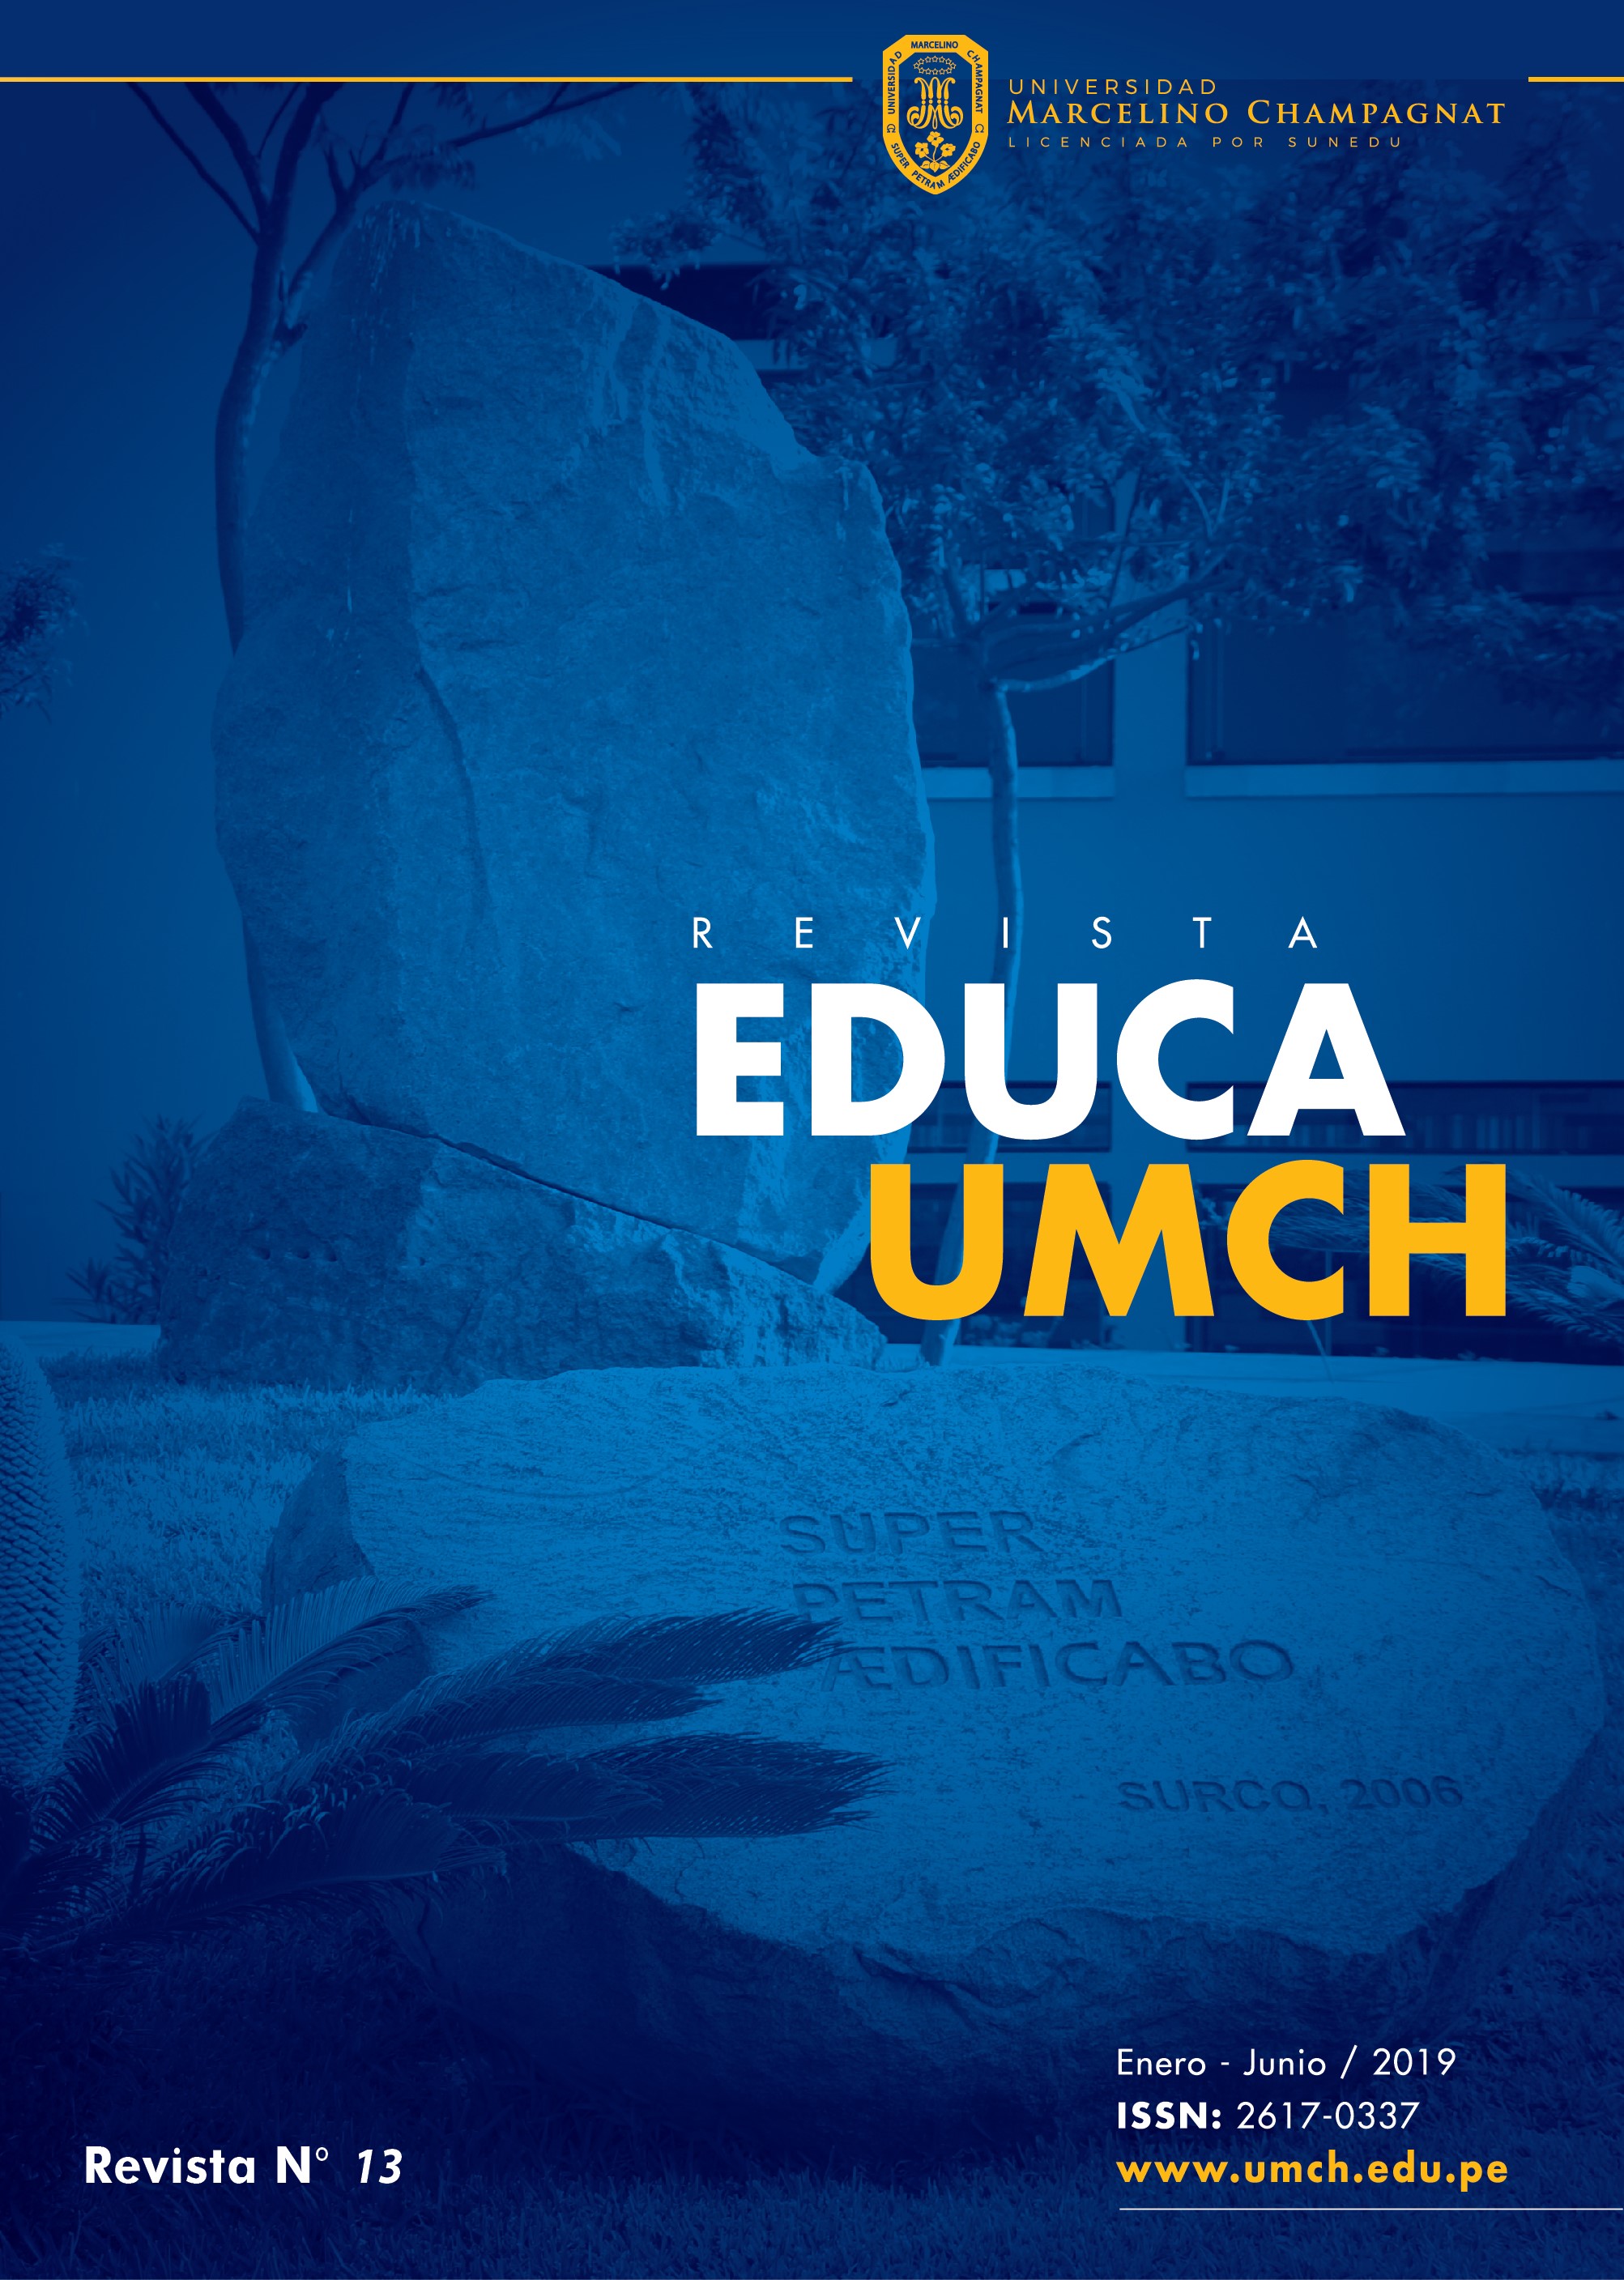 					Ver Núm. 13 (2019): Revista EDUCA UMCH N°13 2019 (enero - junio)
				